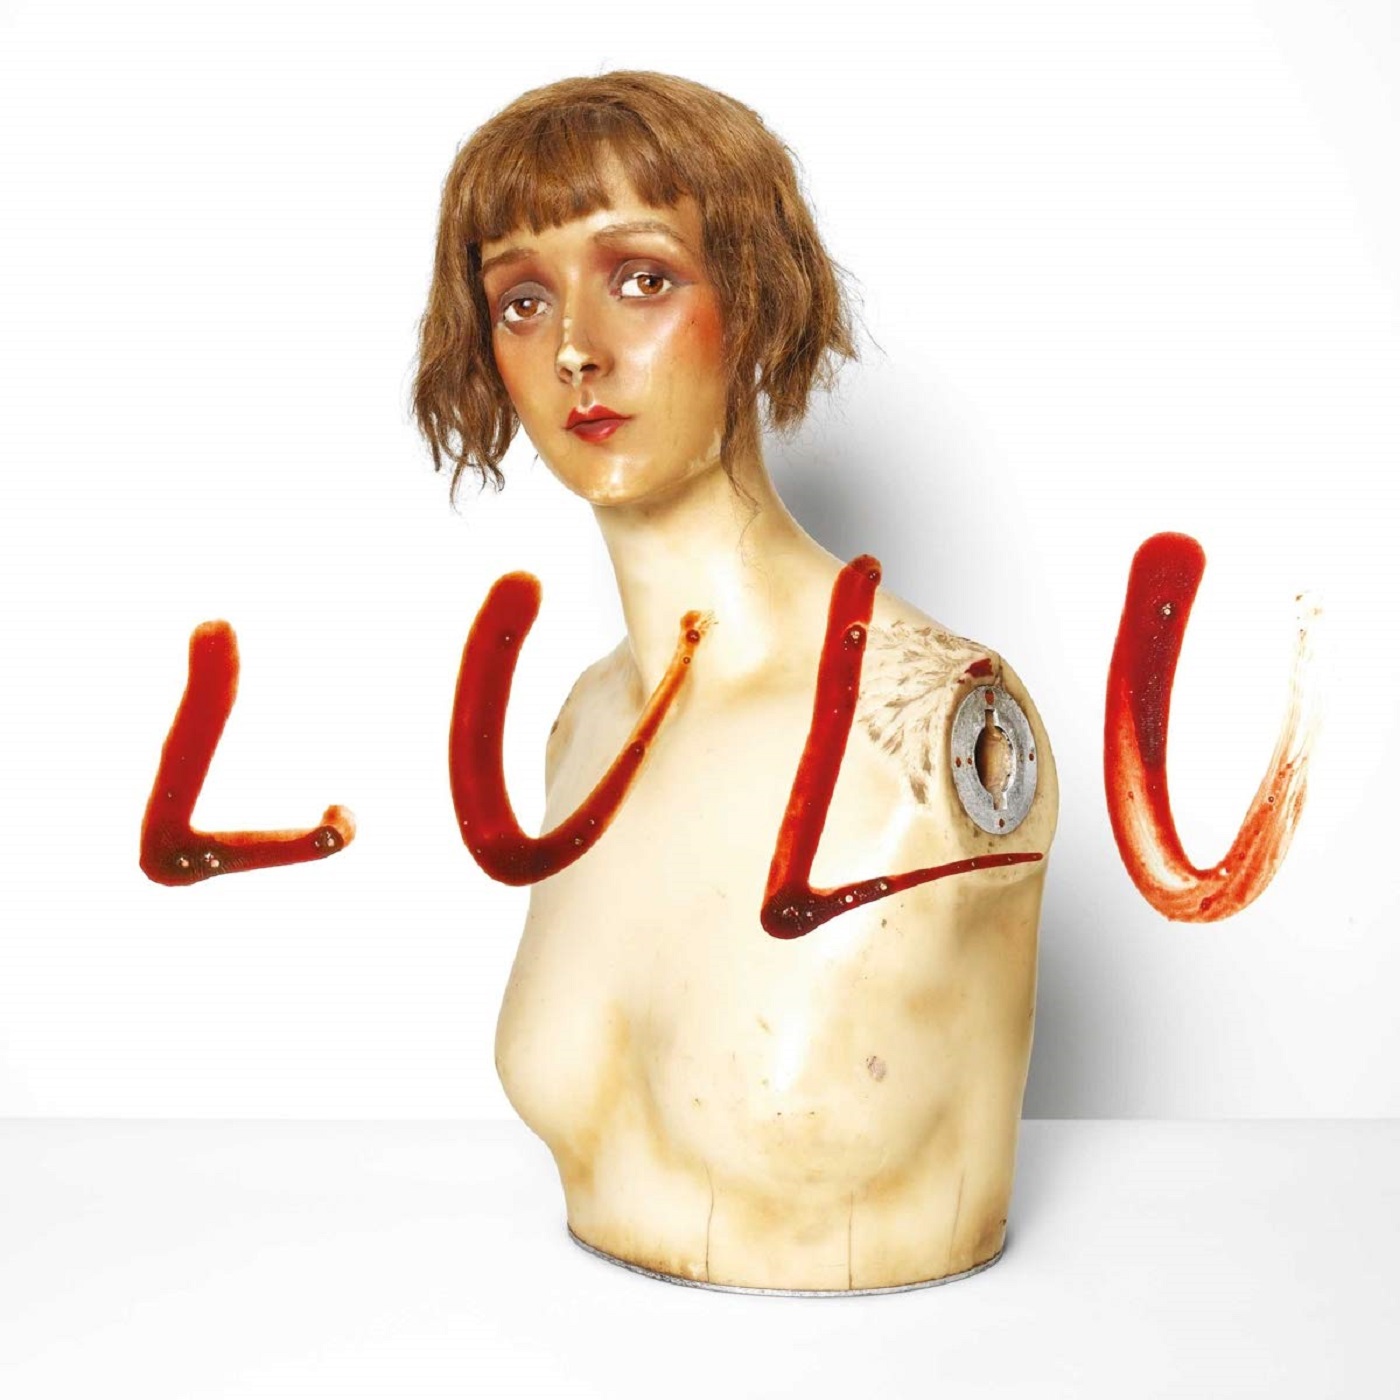 Lou Reed & Metallica’s “Lulu”